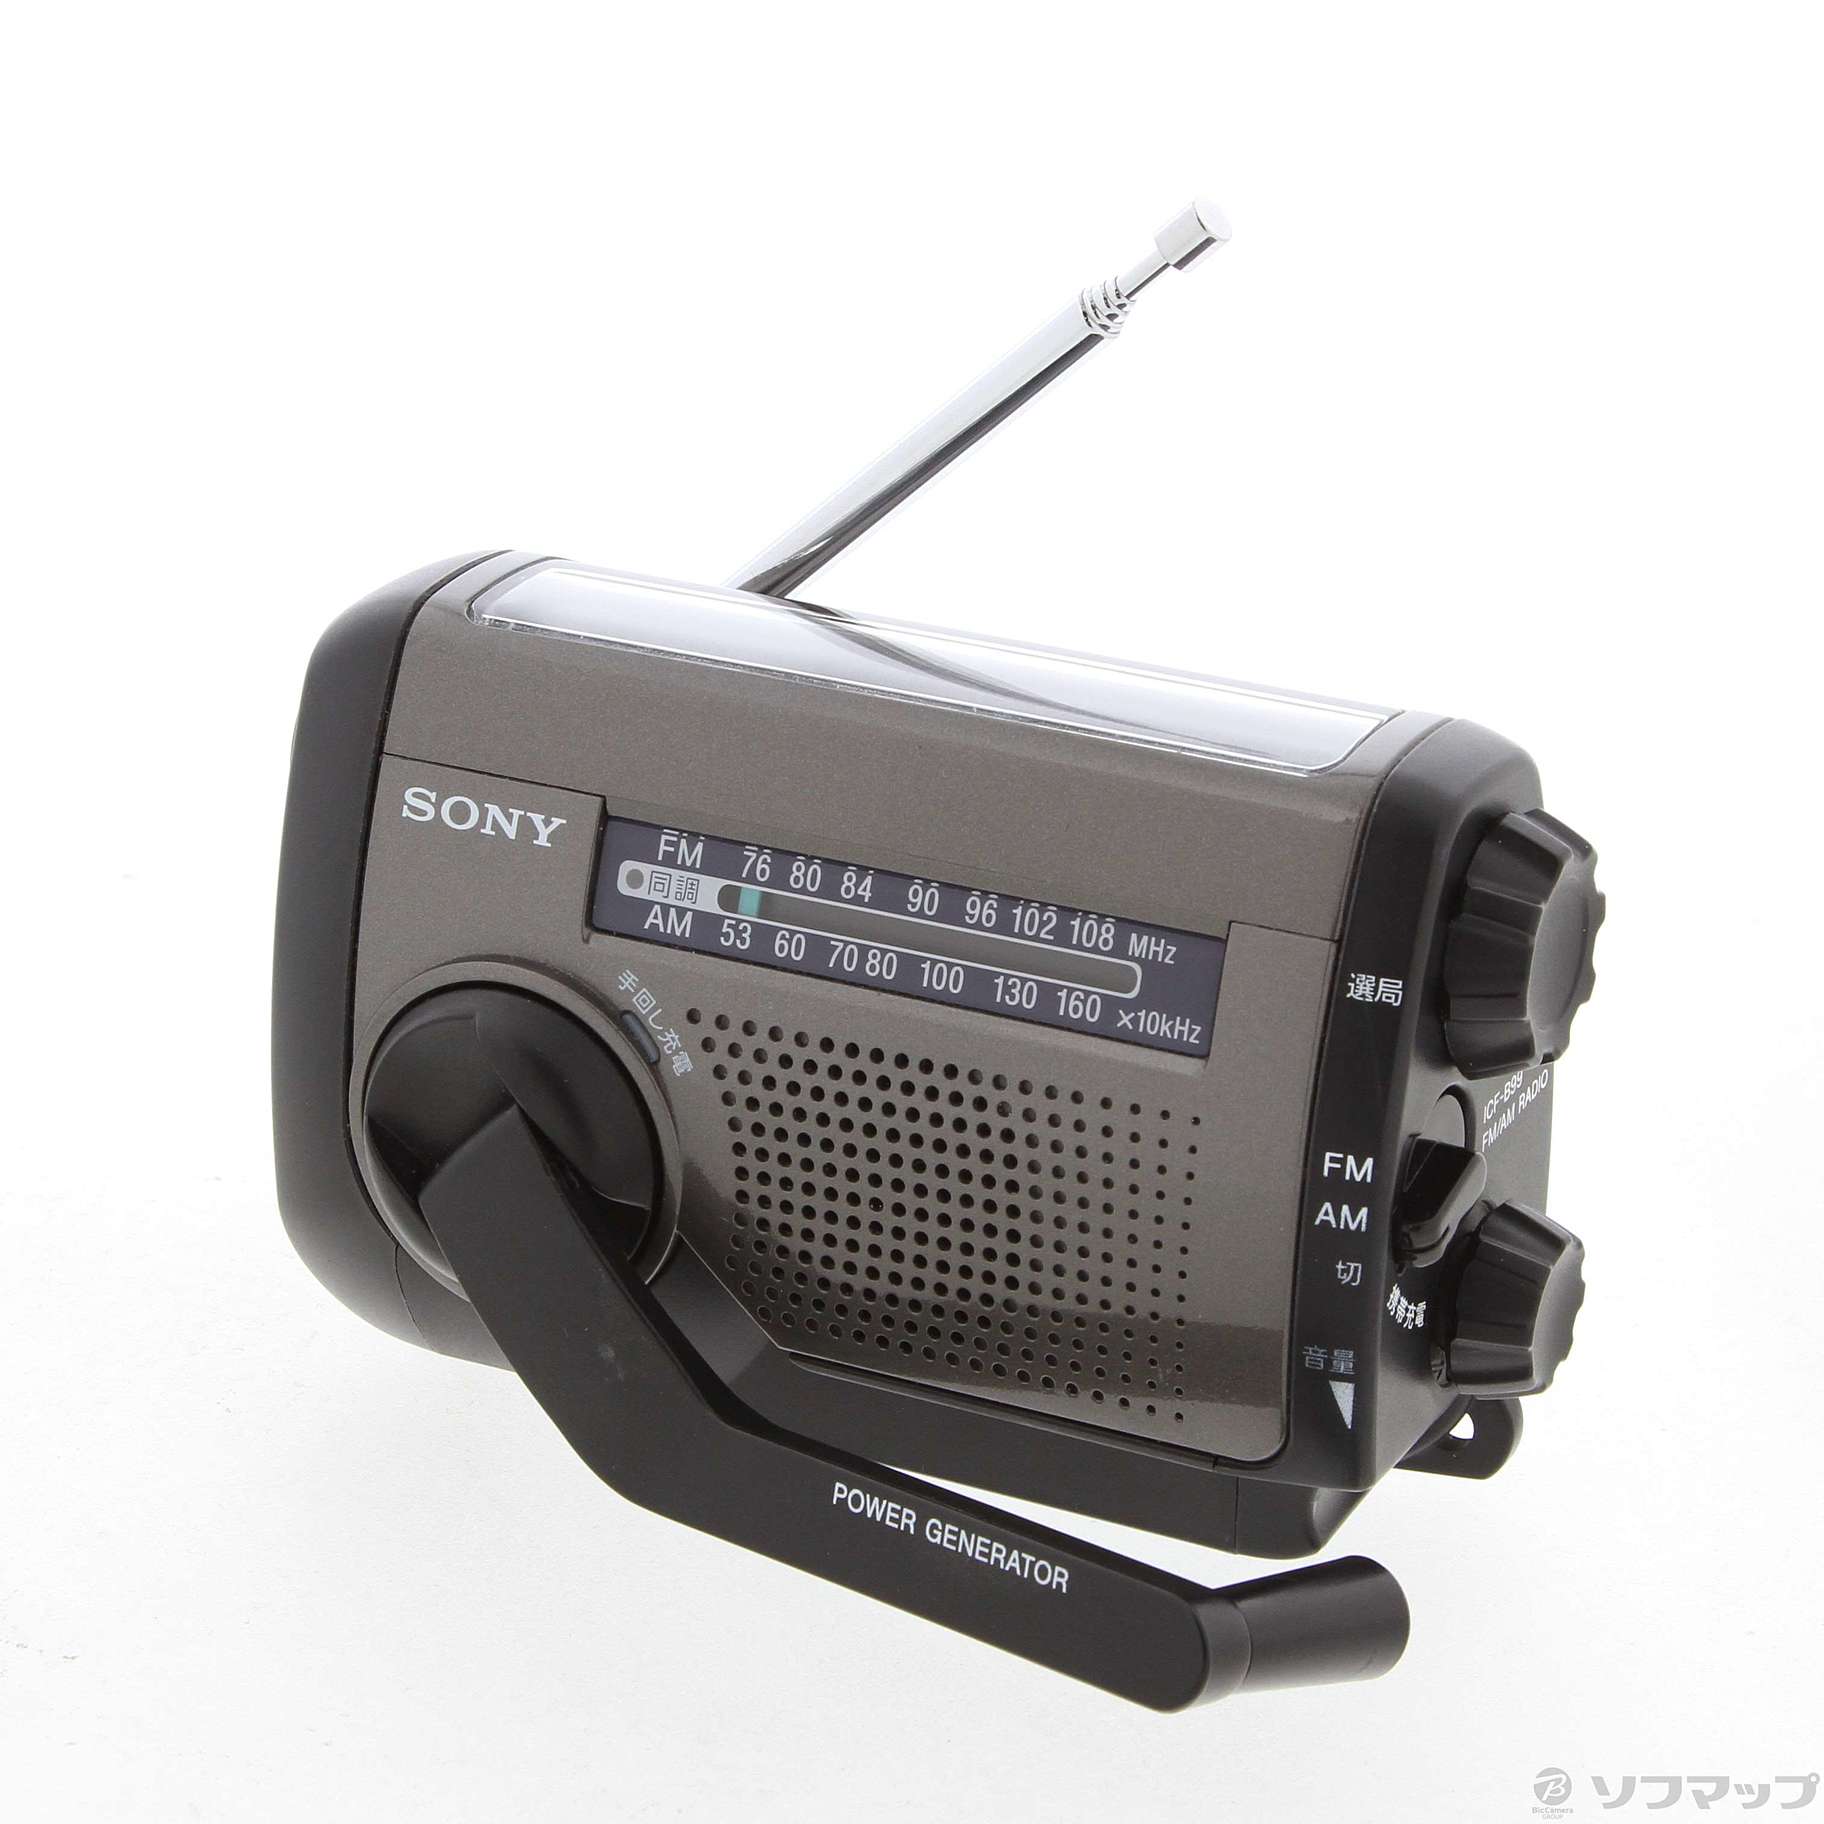 SONY ソニー ラジオ ICF-B99 多機能防災ラジオ - オーディオ機器